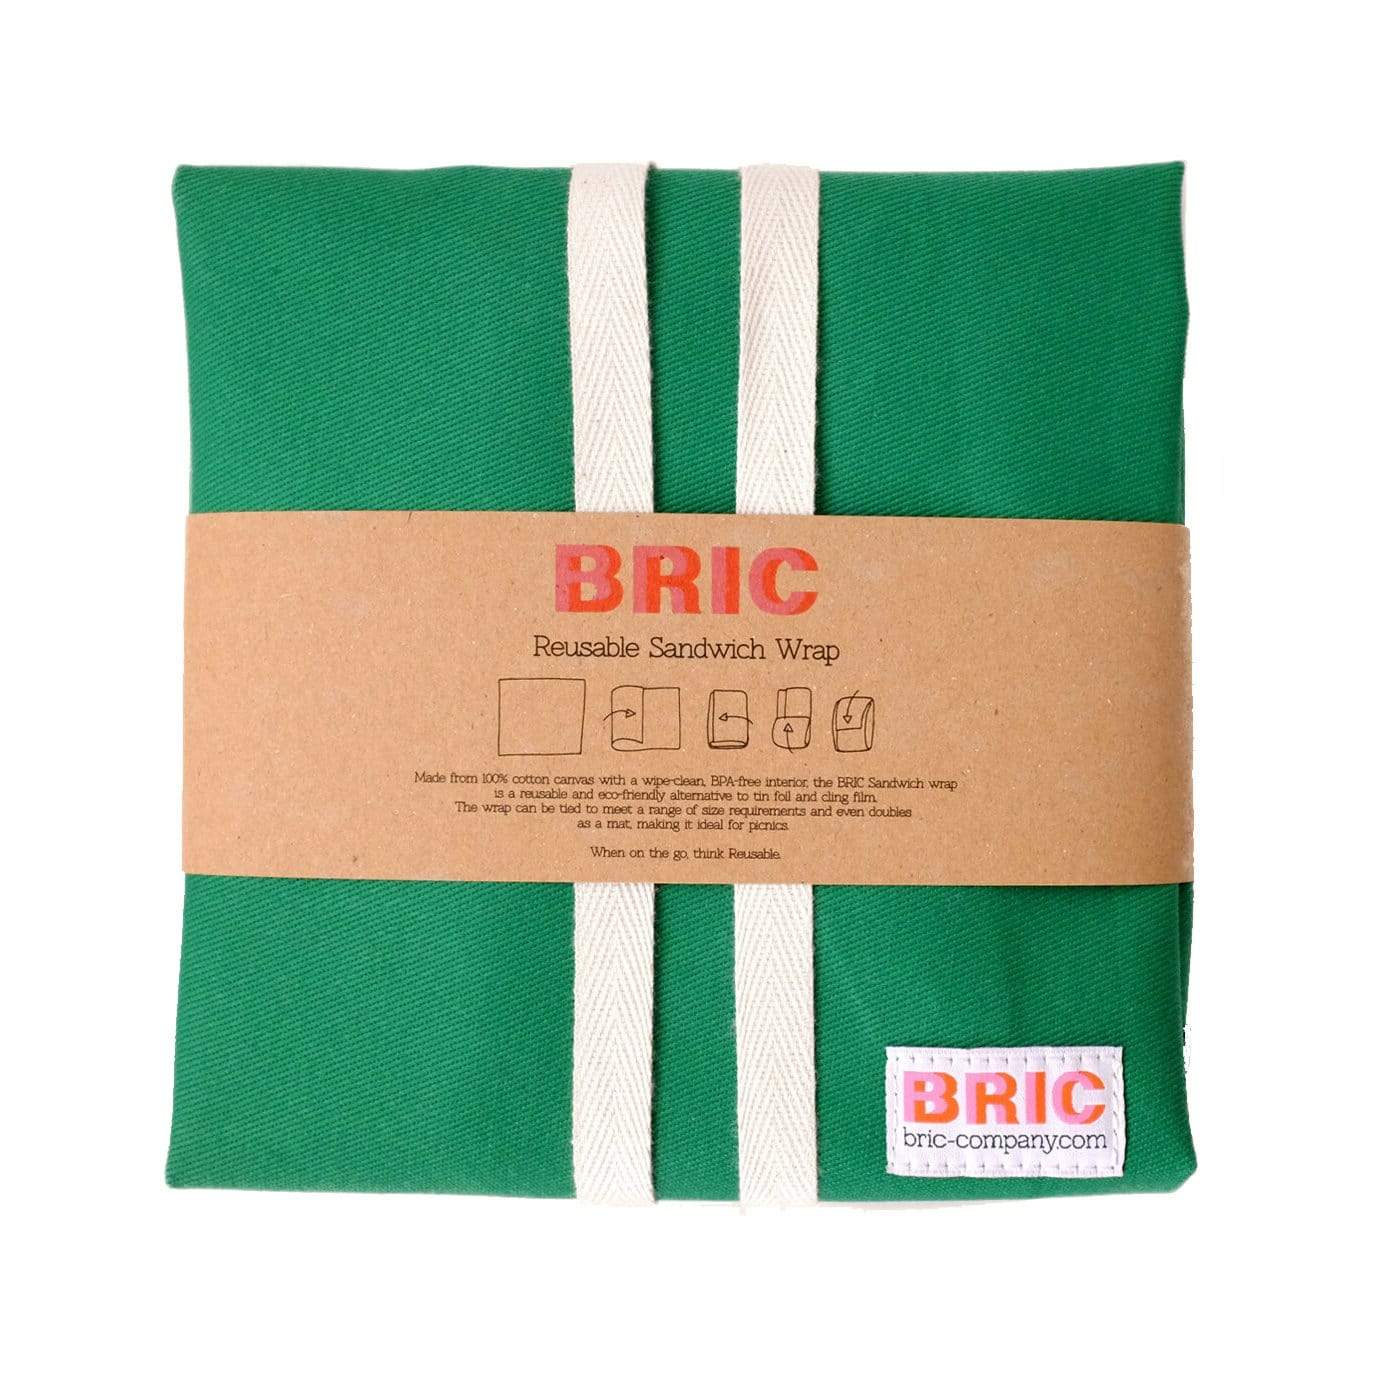 Bric Food bags / wraps Green Reusable Sandwich Wrap (various colours)